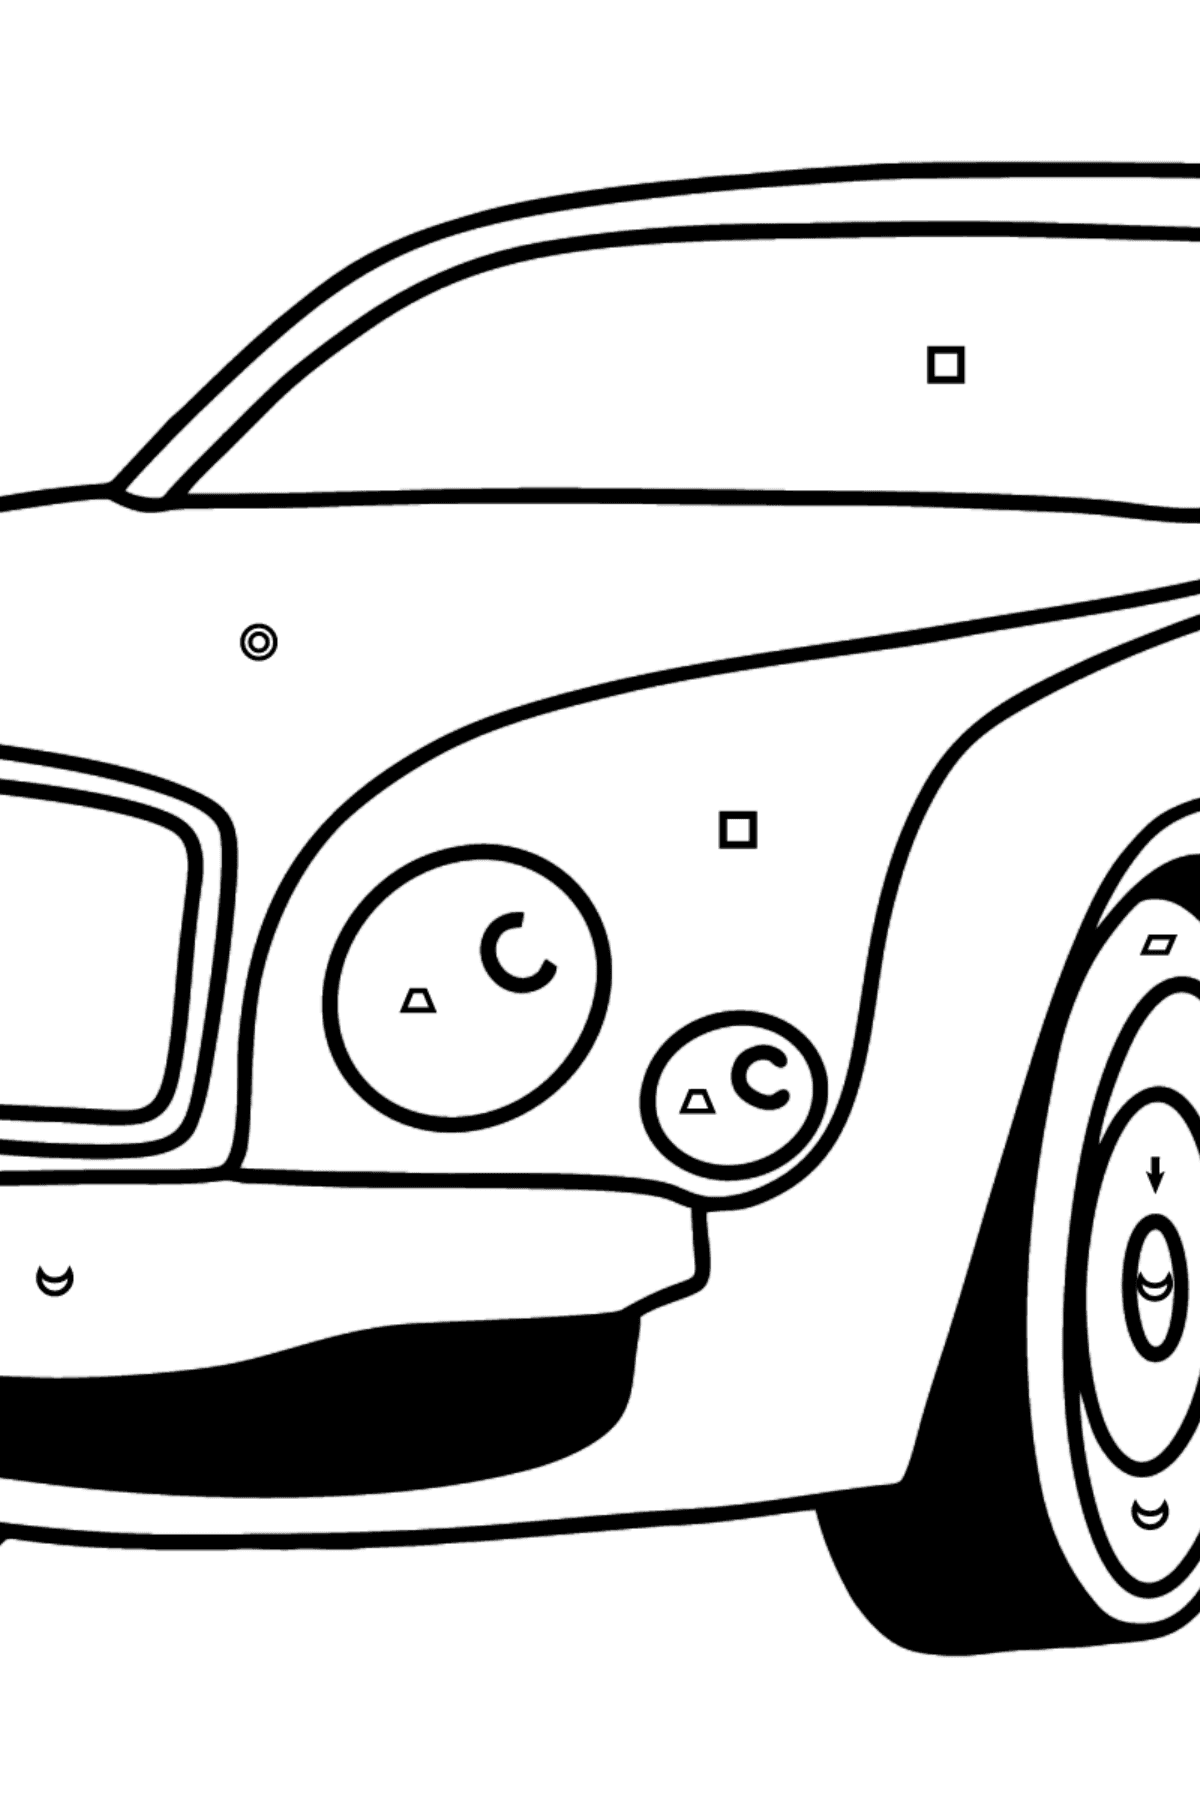 Mewarnai gambar mobil Bentley - Pewarnaan mengikuti Simbol dan Bentuk Geometri untuk anak-anak